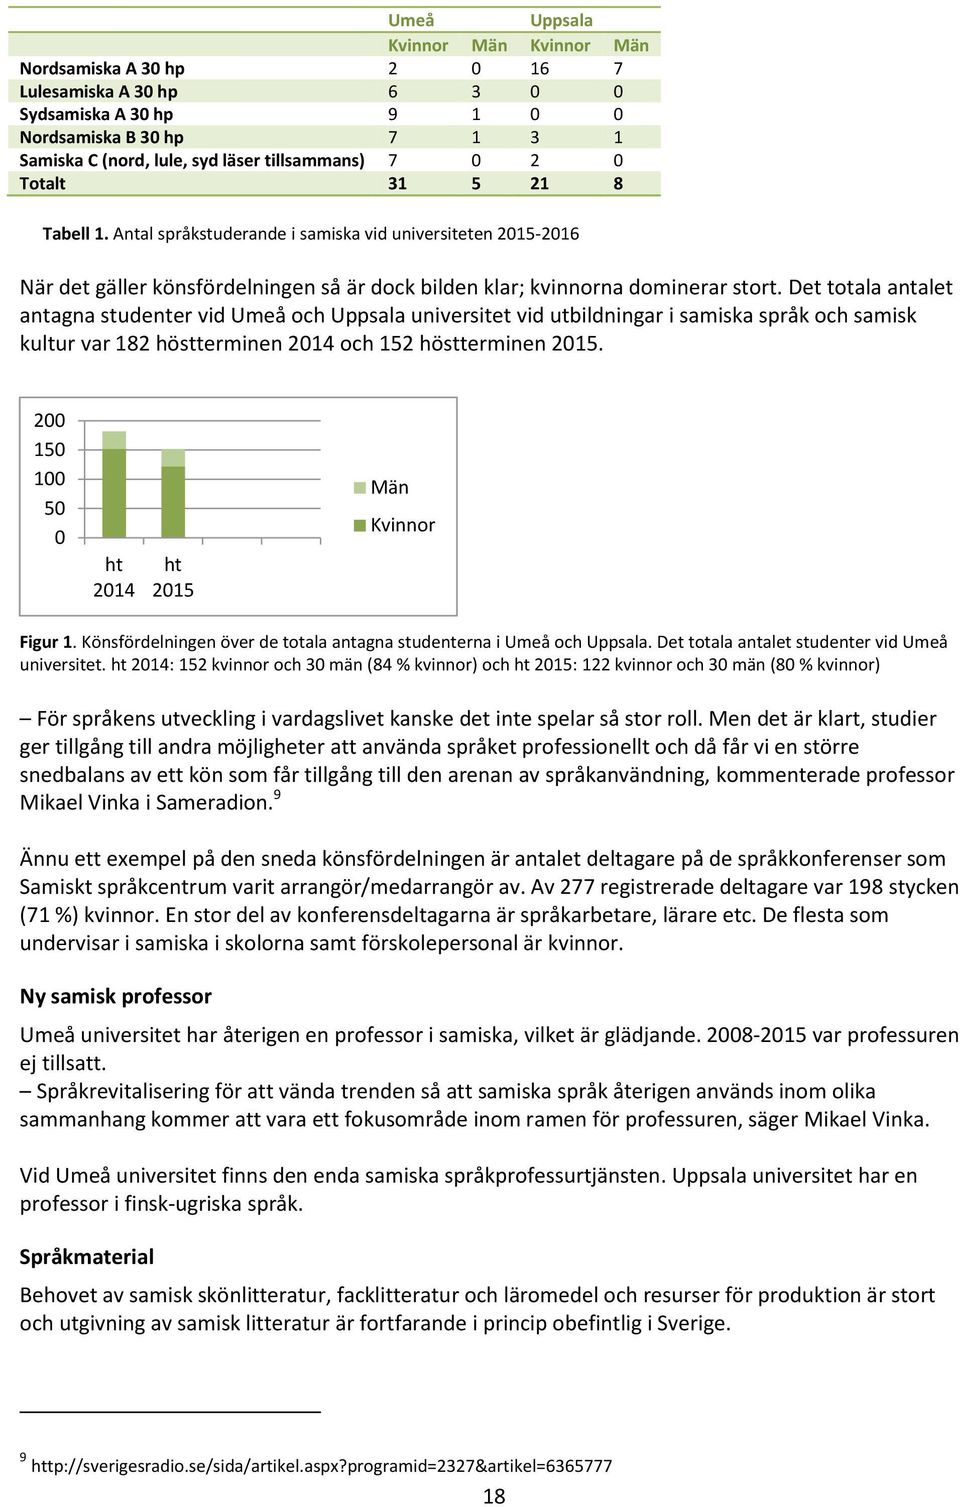 Det totala antalet antagna studenter vid Umeå och Uppsala universitet vid utbildningar i samiska språk och samisk kultur var 182 höstterminen 2014 och 152 höstterminen 2015.